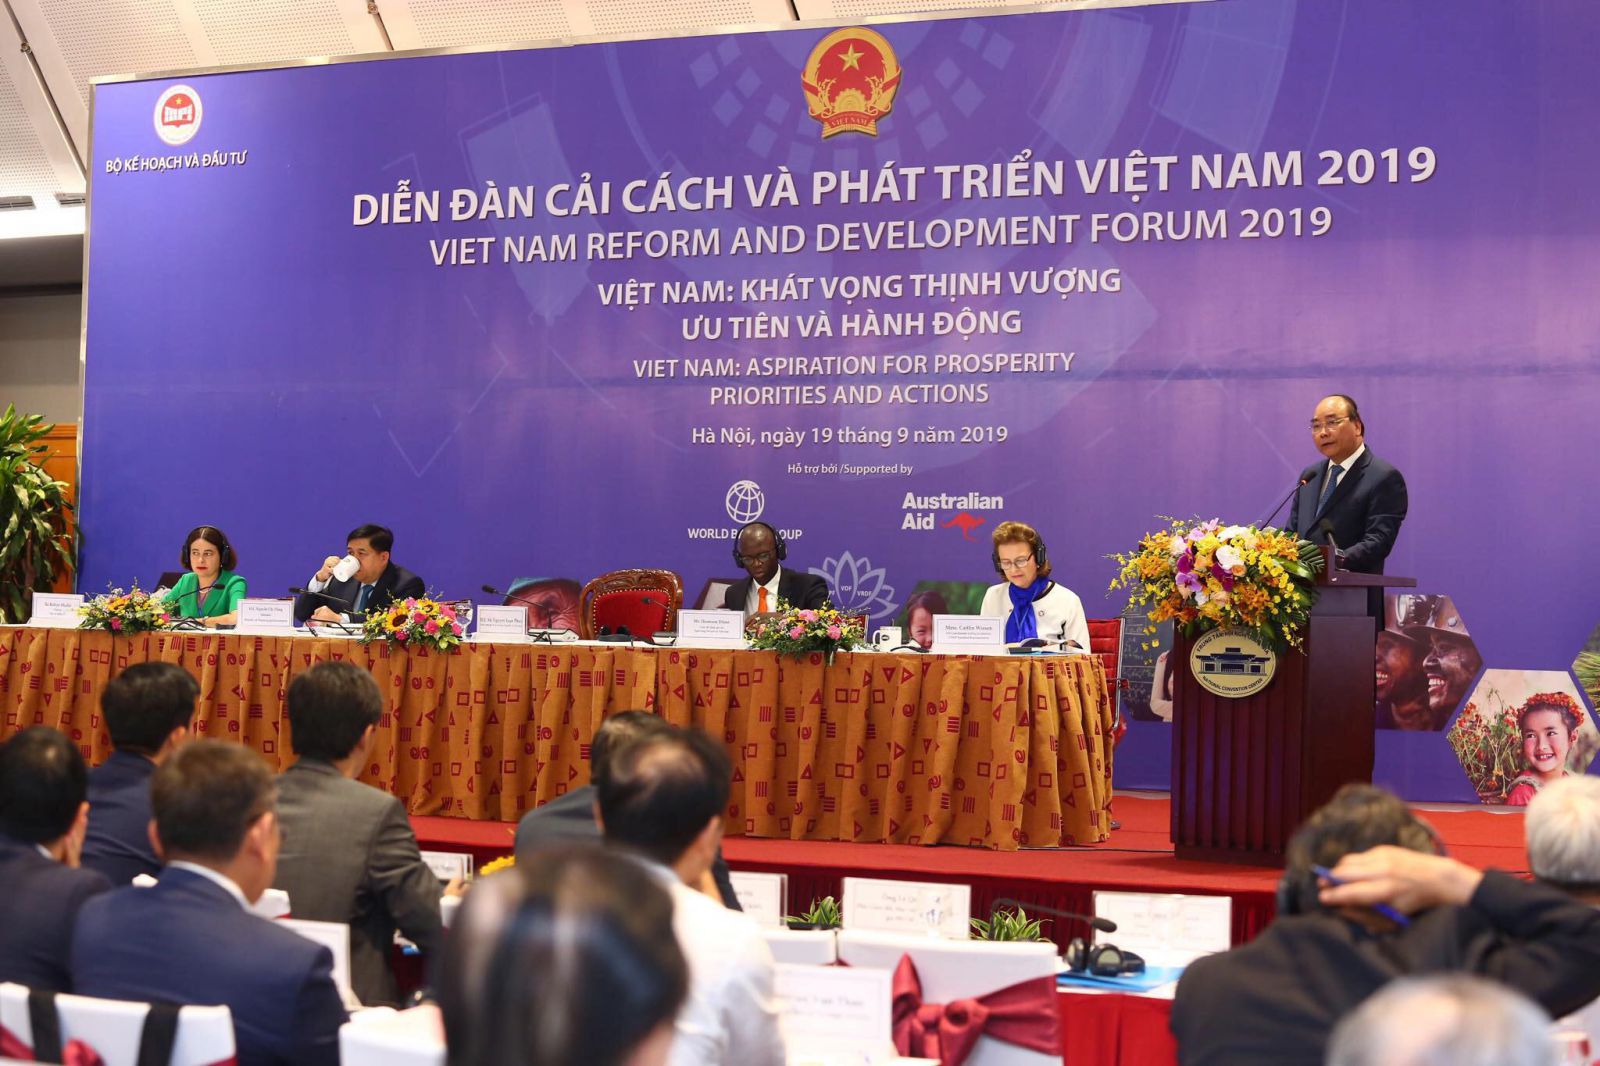 Diễn đàn thường niên về Cải cách và Phát triển lần thứ Hai năm 2019 (VRDF 2019) với chủ đề “Việt Nam: Khát vọng thịnh vượng - Ưu tiên và Hành động” đang diễn ra tại Hà Nội.